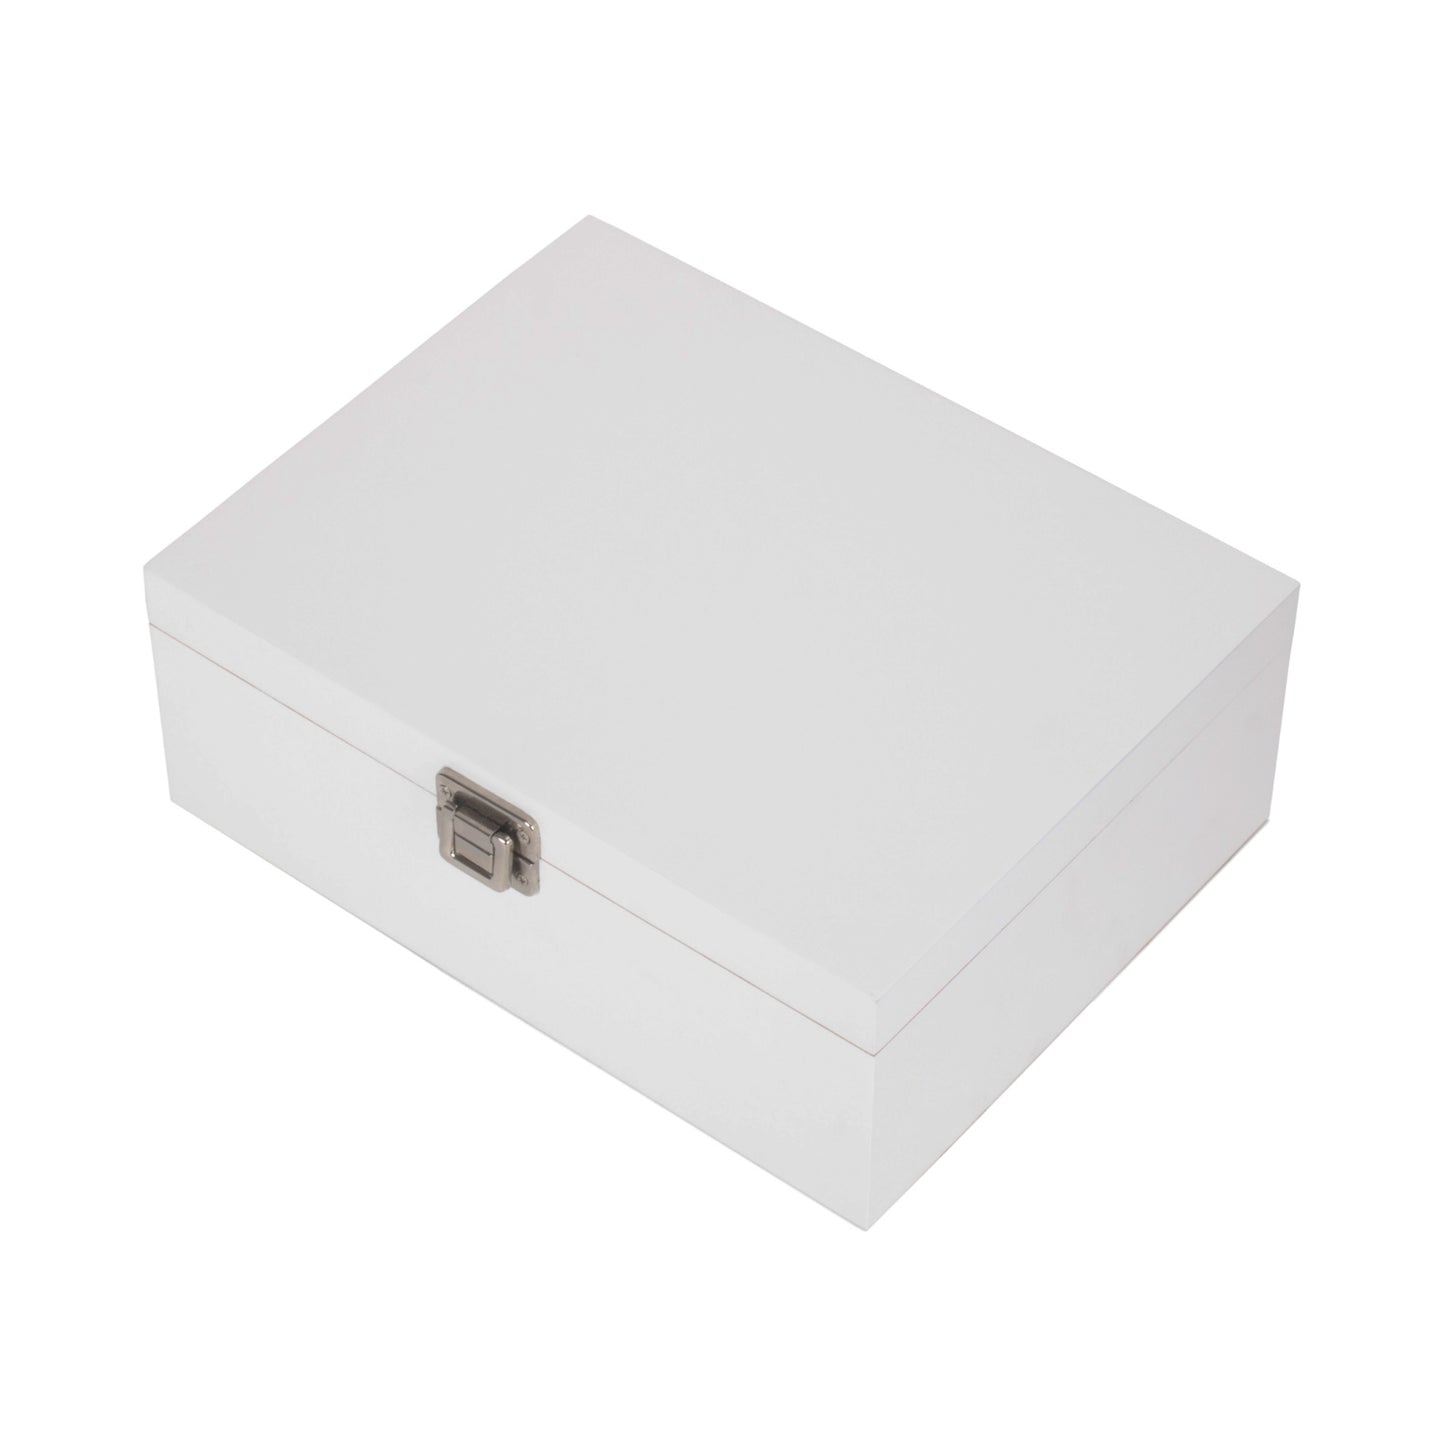 12 Inch White Wooden Box